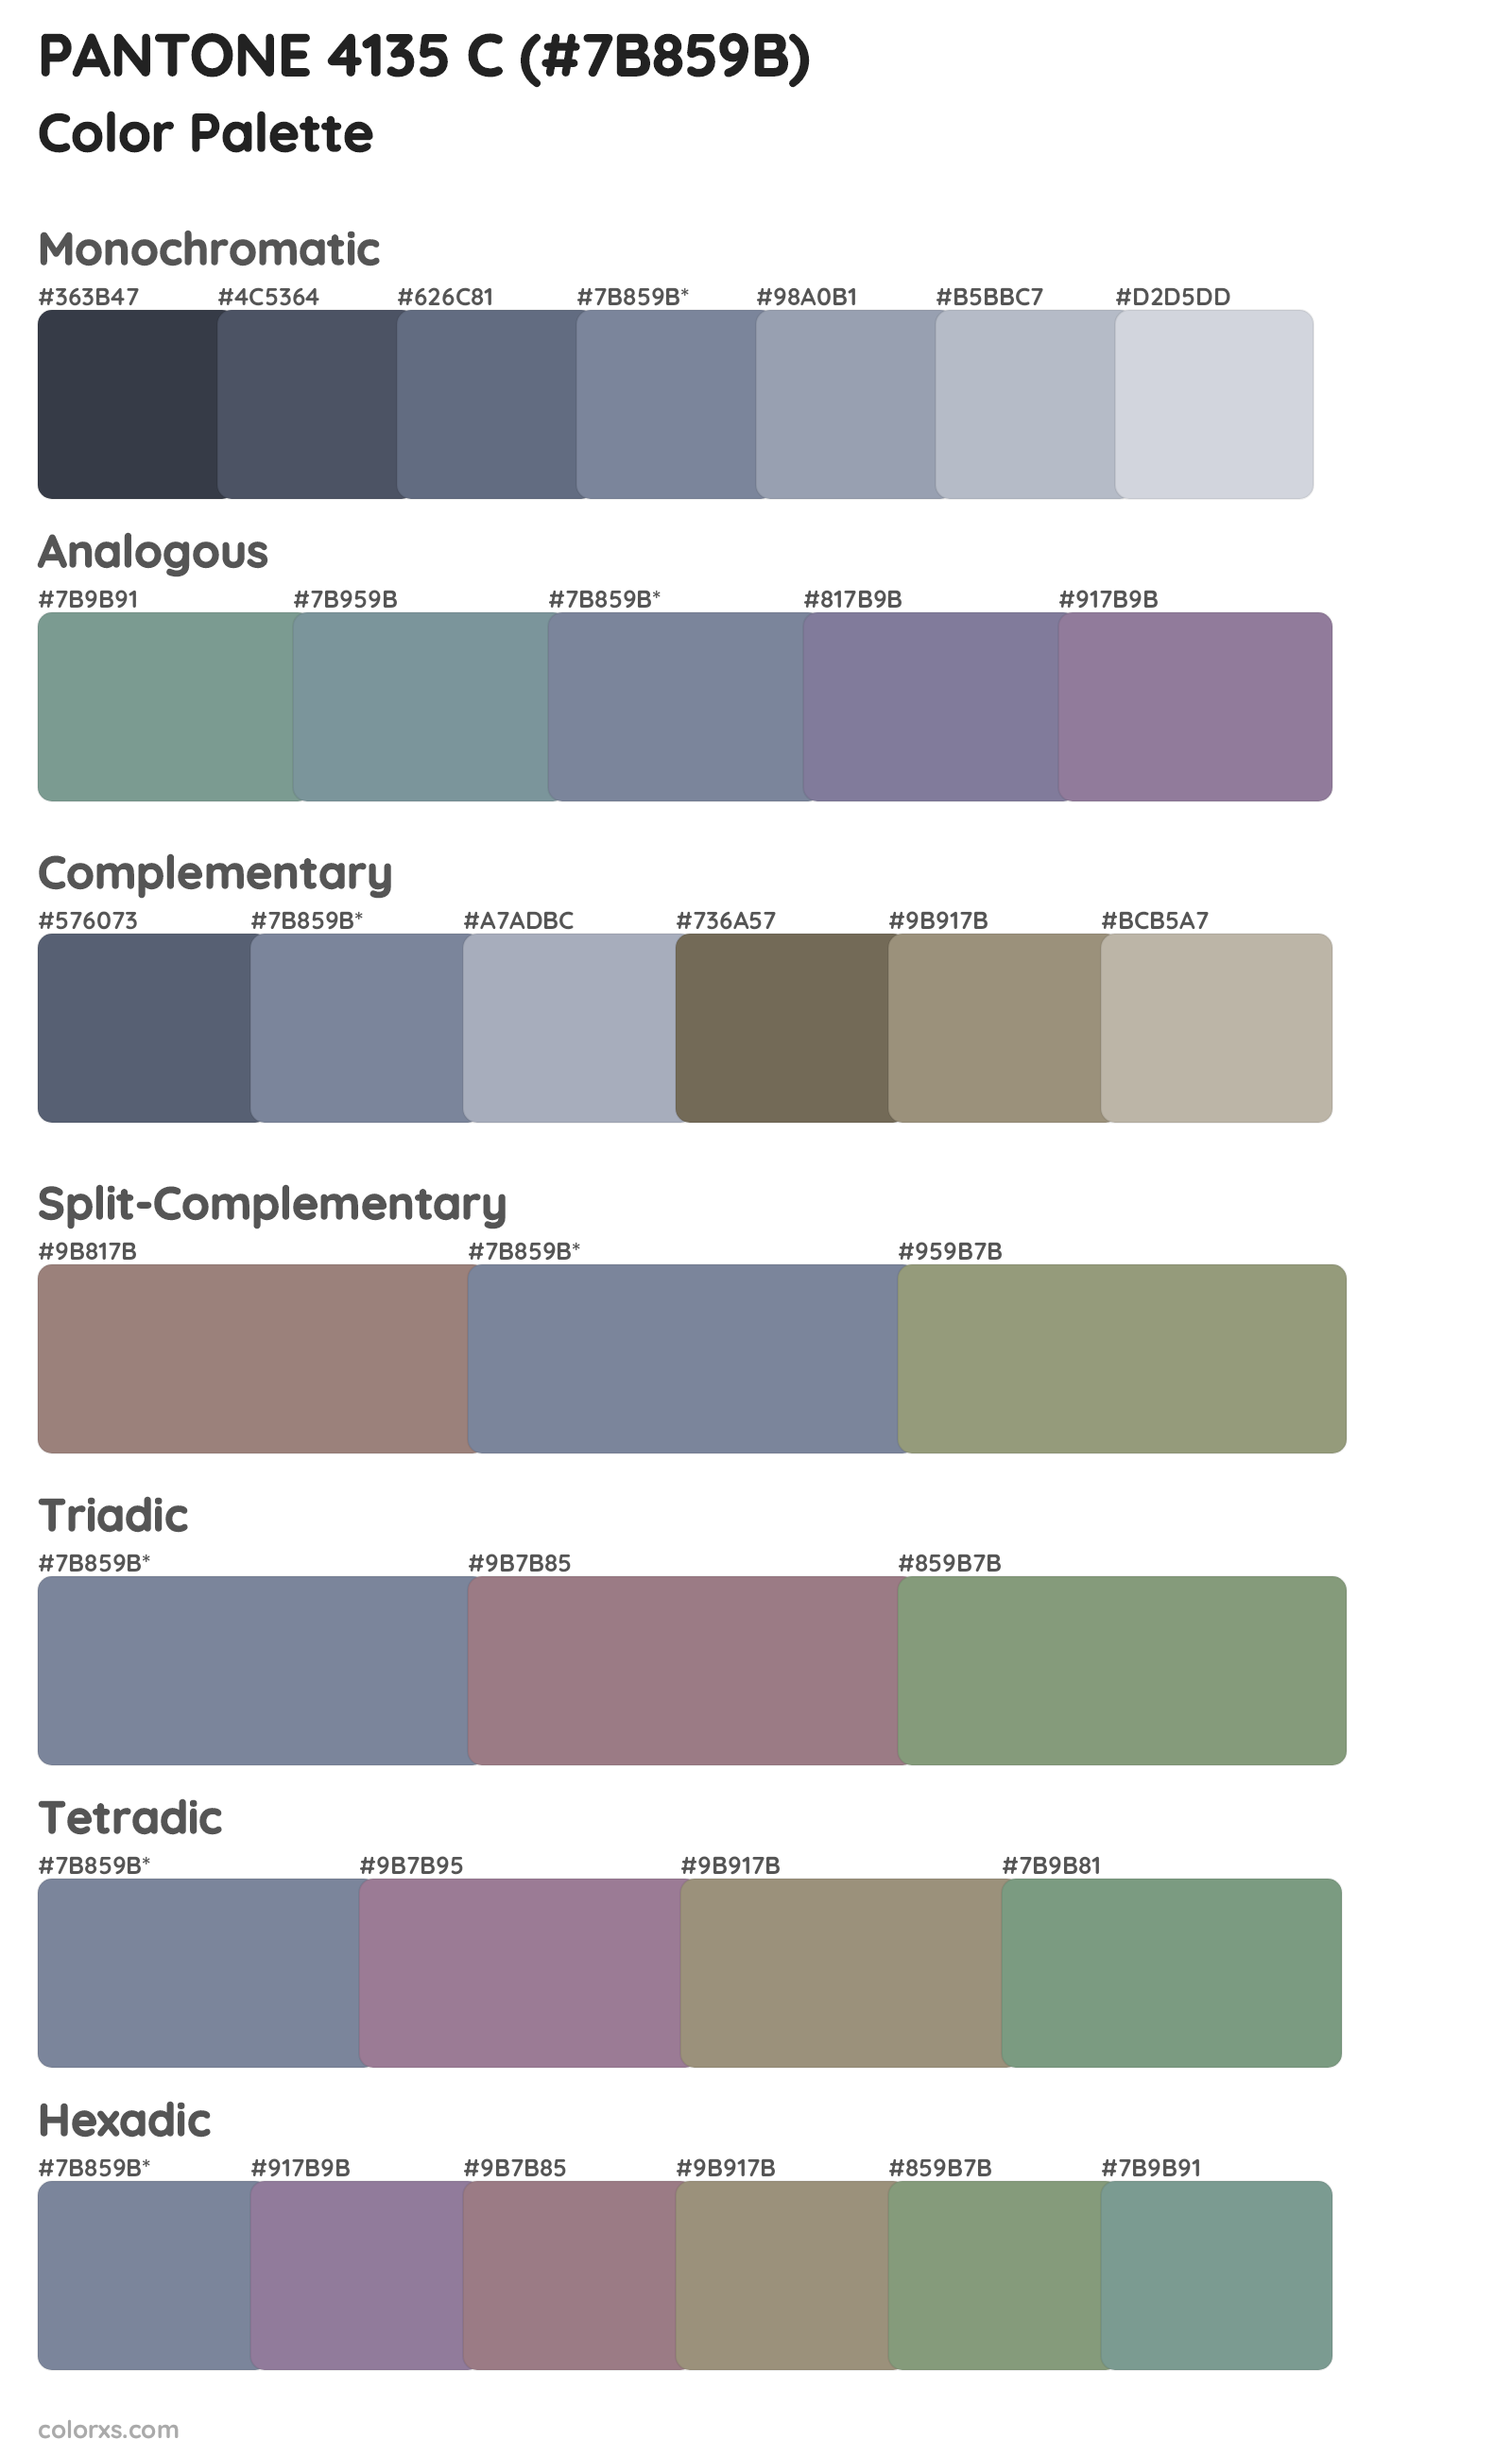 PANTONE 4135 C Color Scheme Palettes